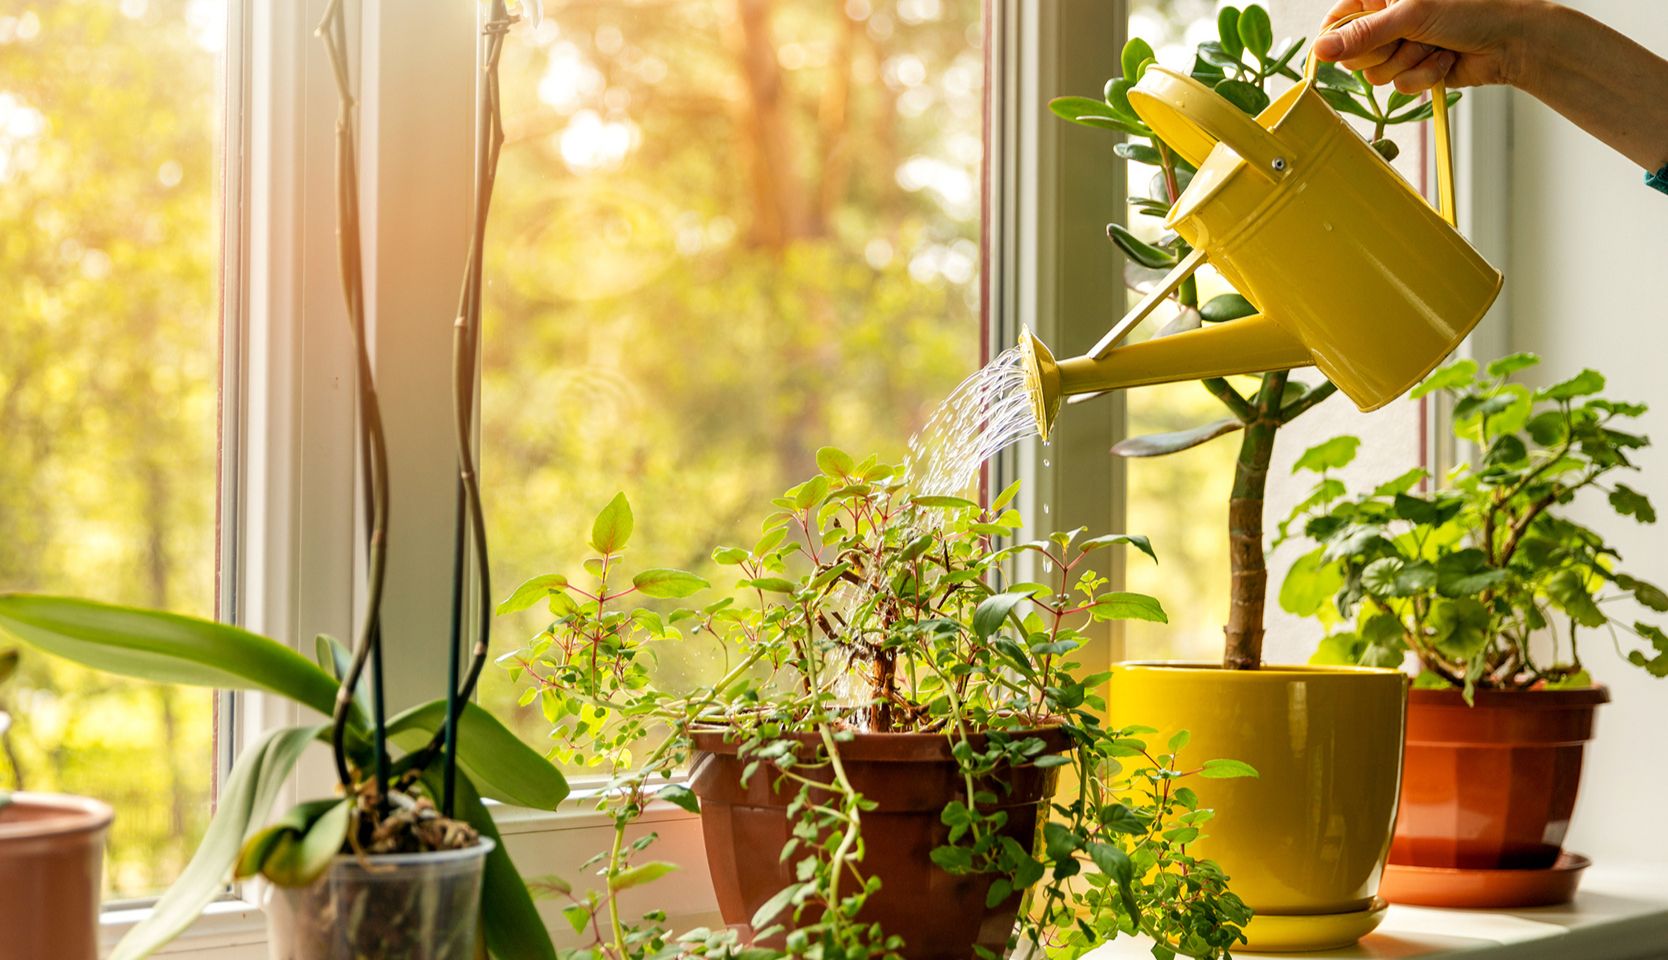 arrosoir pour arroser plantes près d'une fenêtre pour bien entretenir les plantes vertes d’intérieur